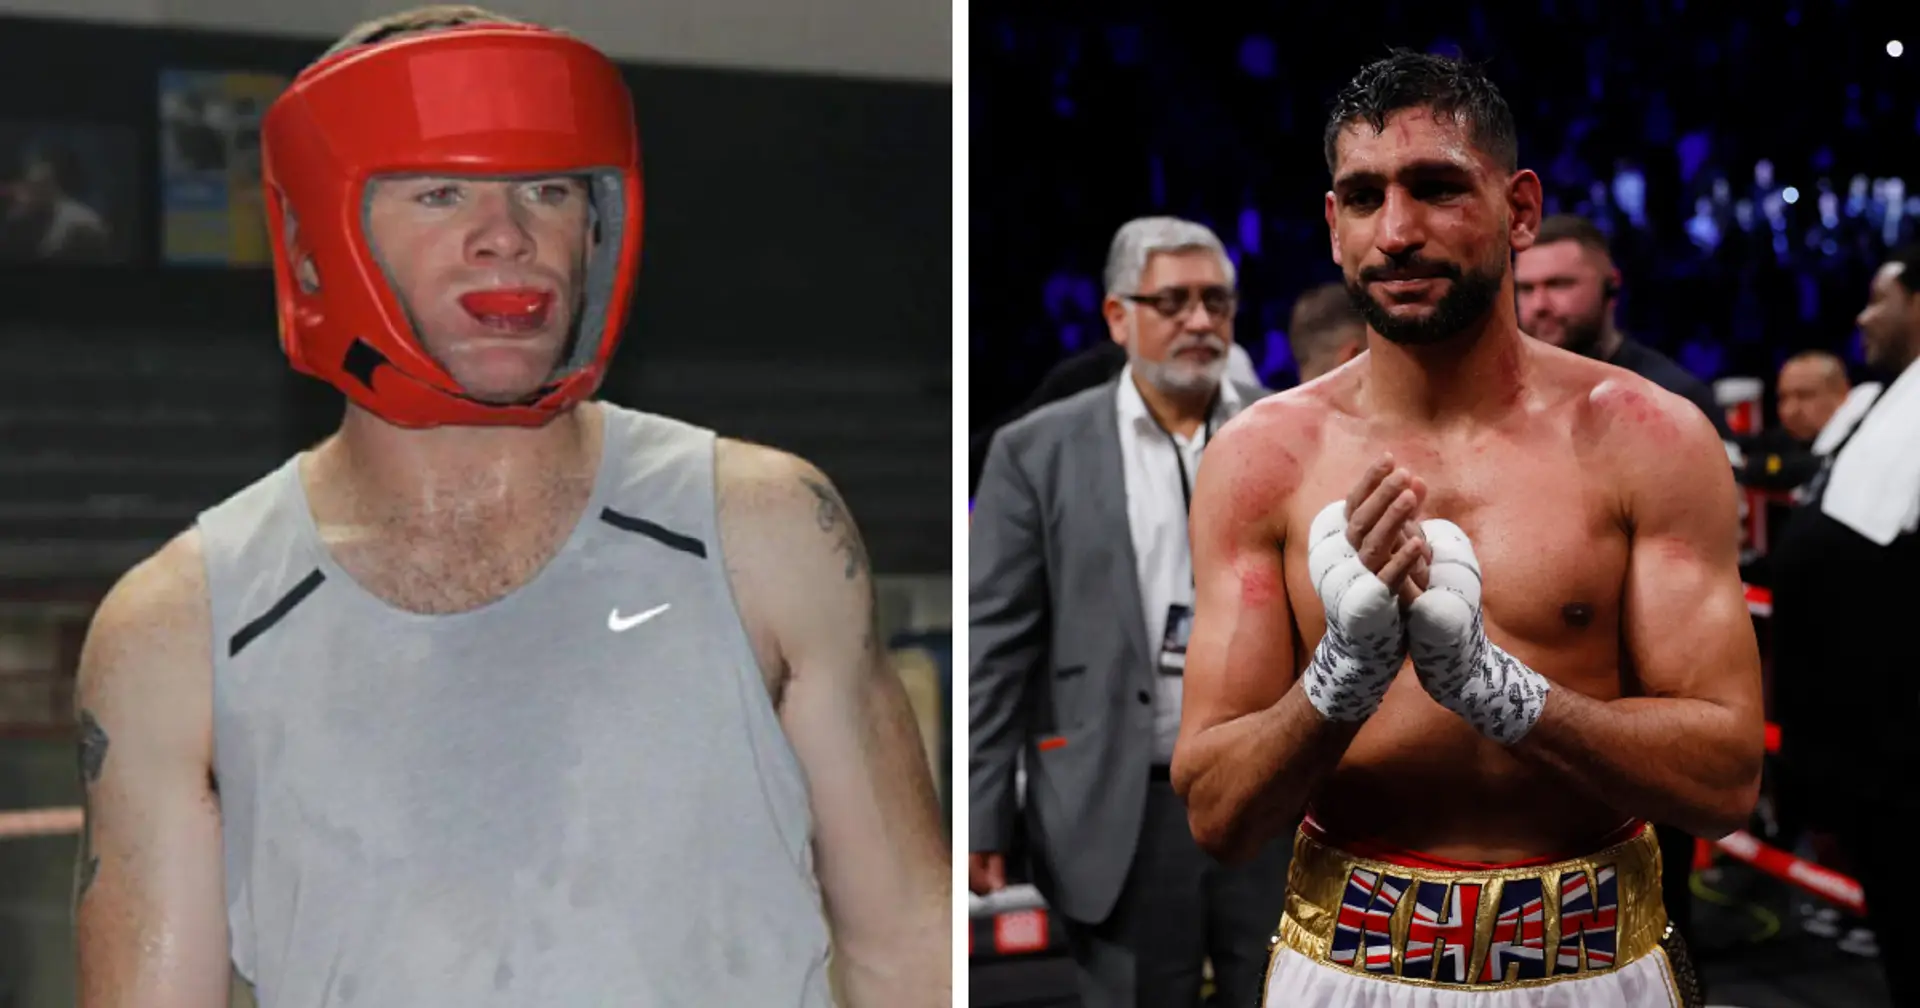 "Das würde sich gut verkaufen": Amir Khan bietet Wayne Rooney an, ihn für einen Boxkampf zu trainieren, der einen alten Streit beilegen könnte 